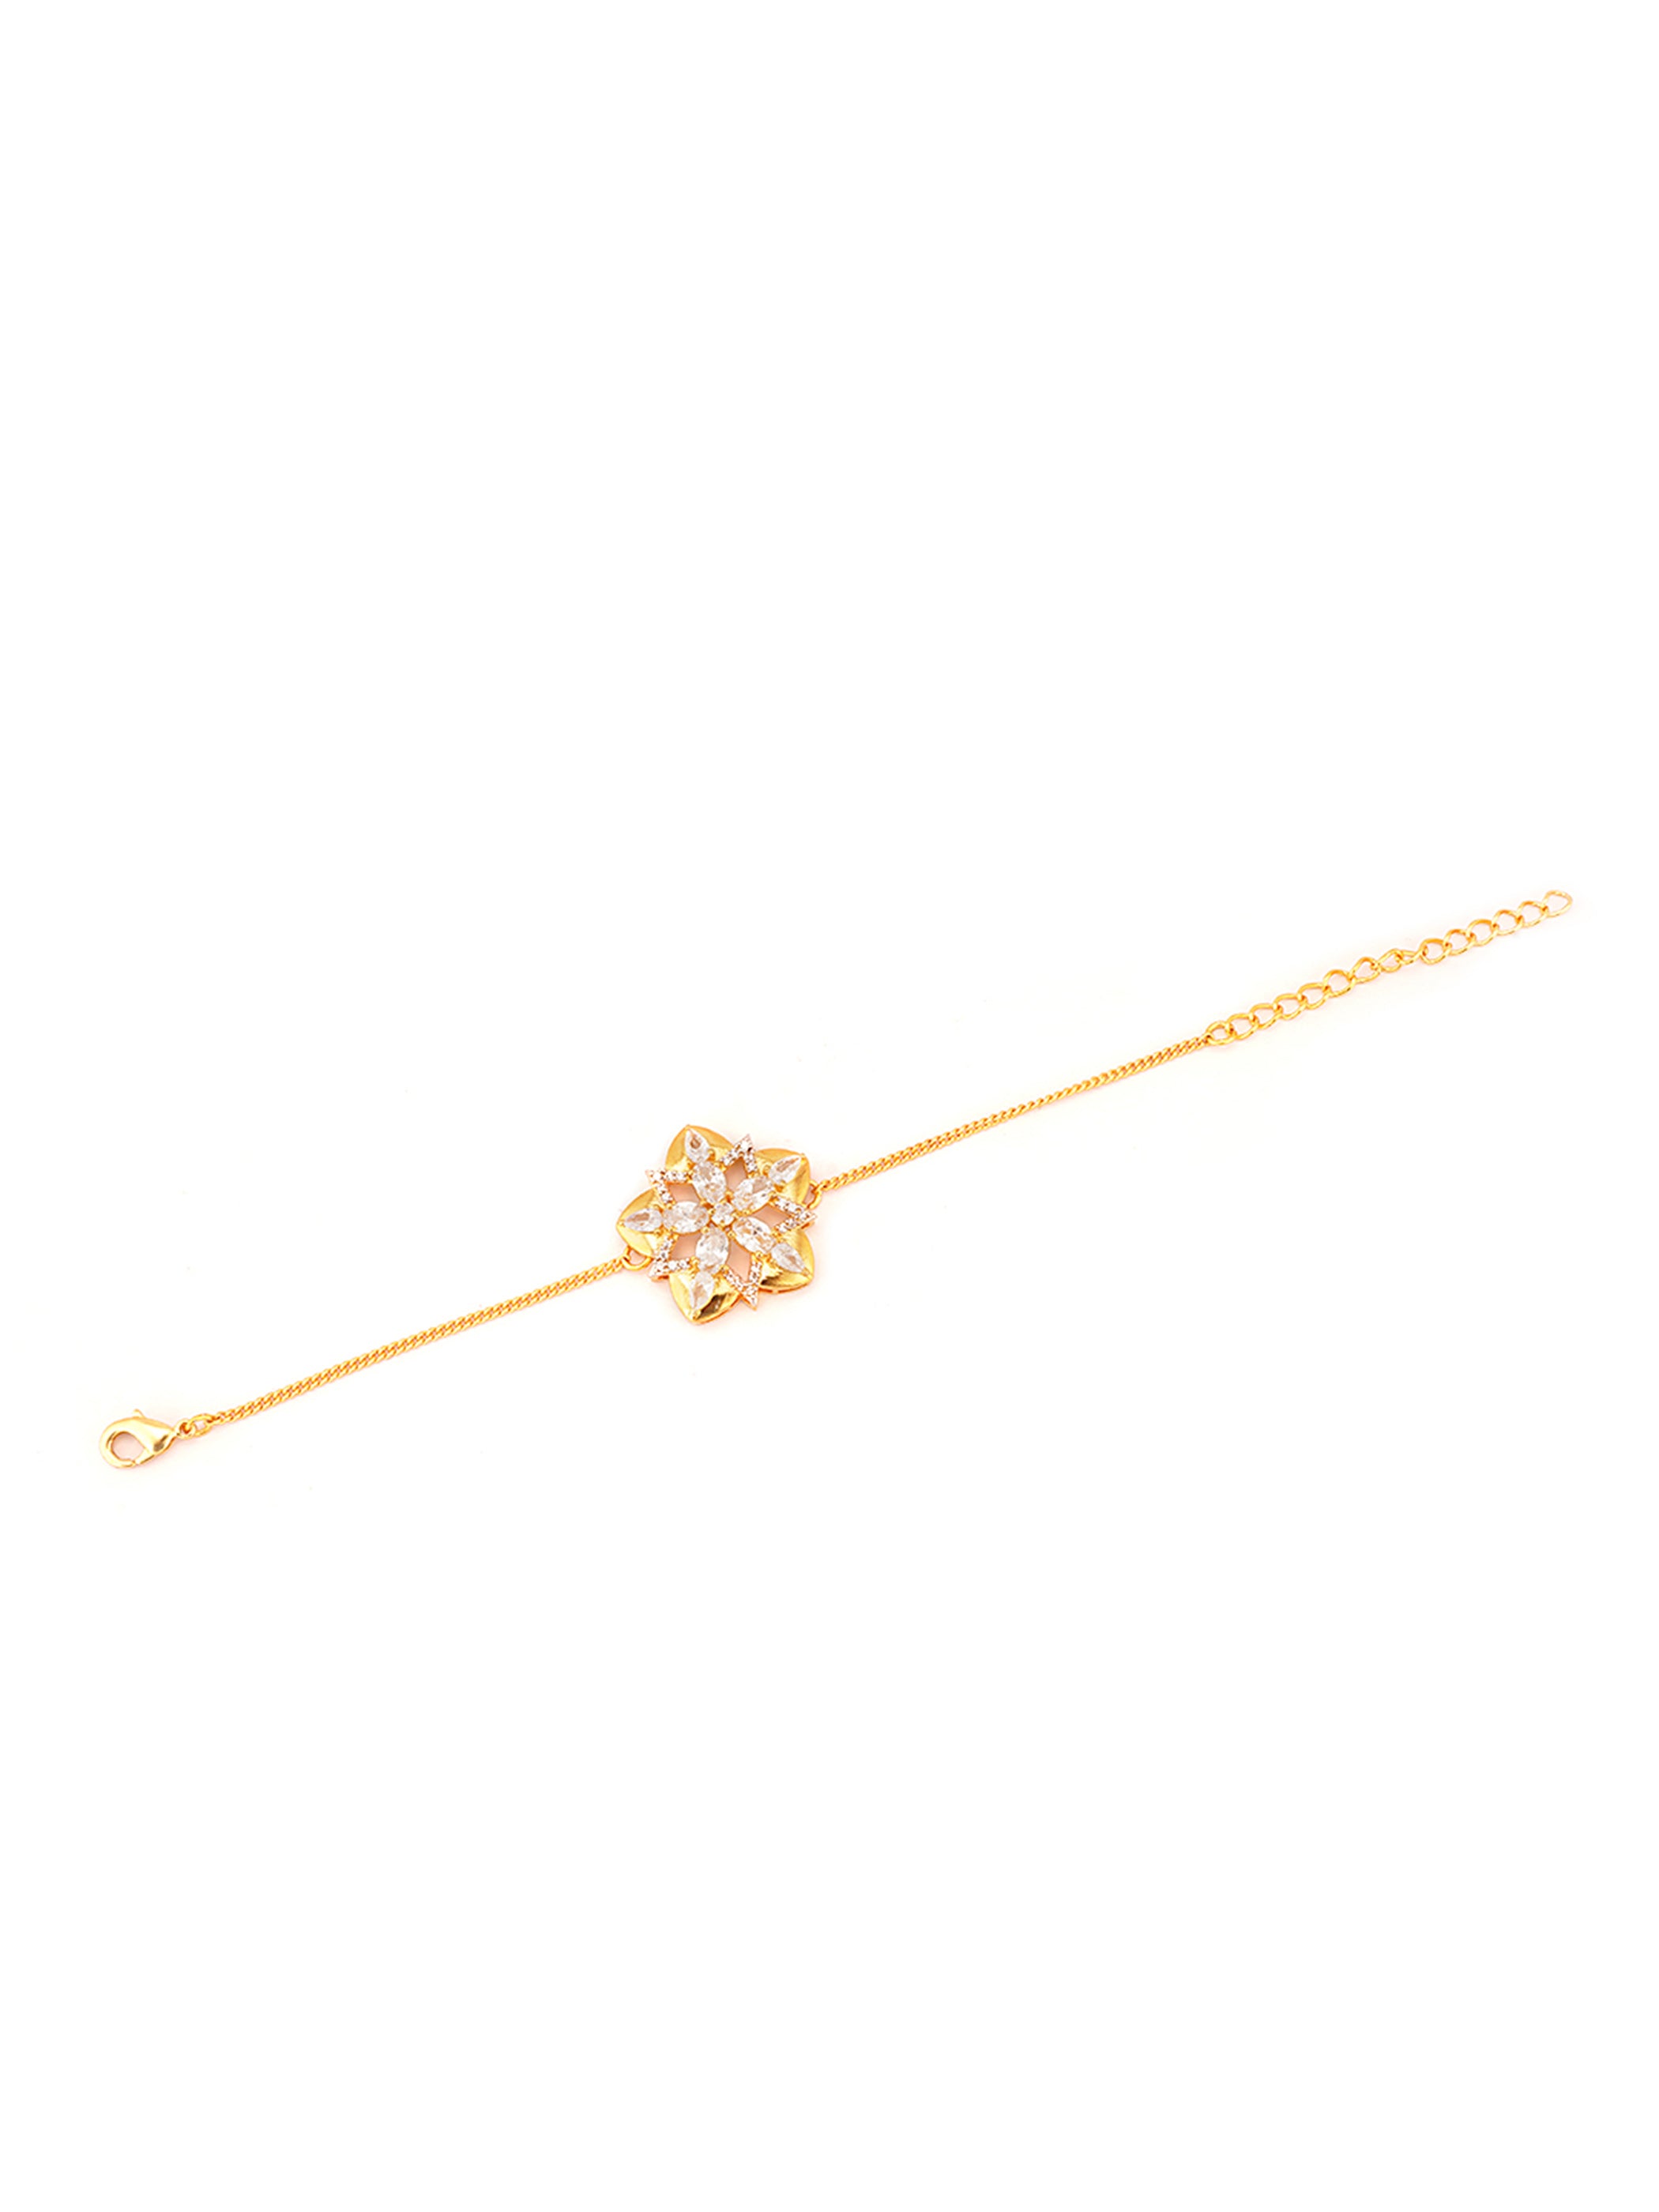 Shimmering Floret CZ Golden Star Shape Mangalsutra Bracelet